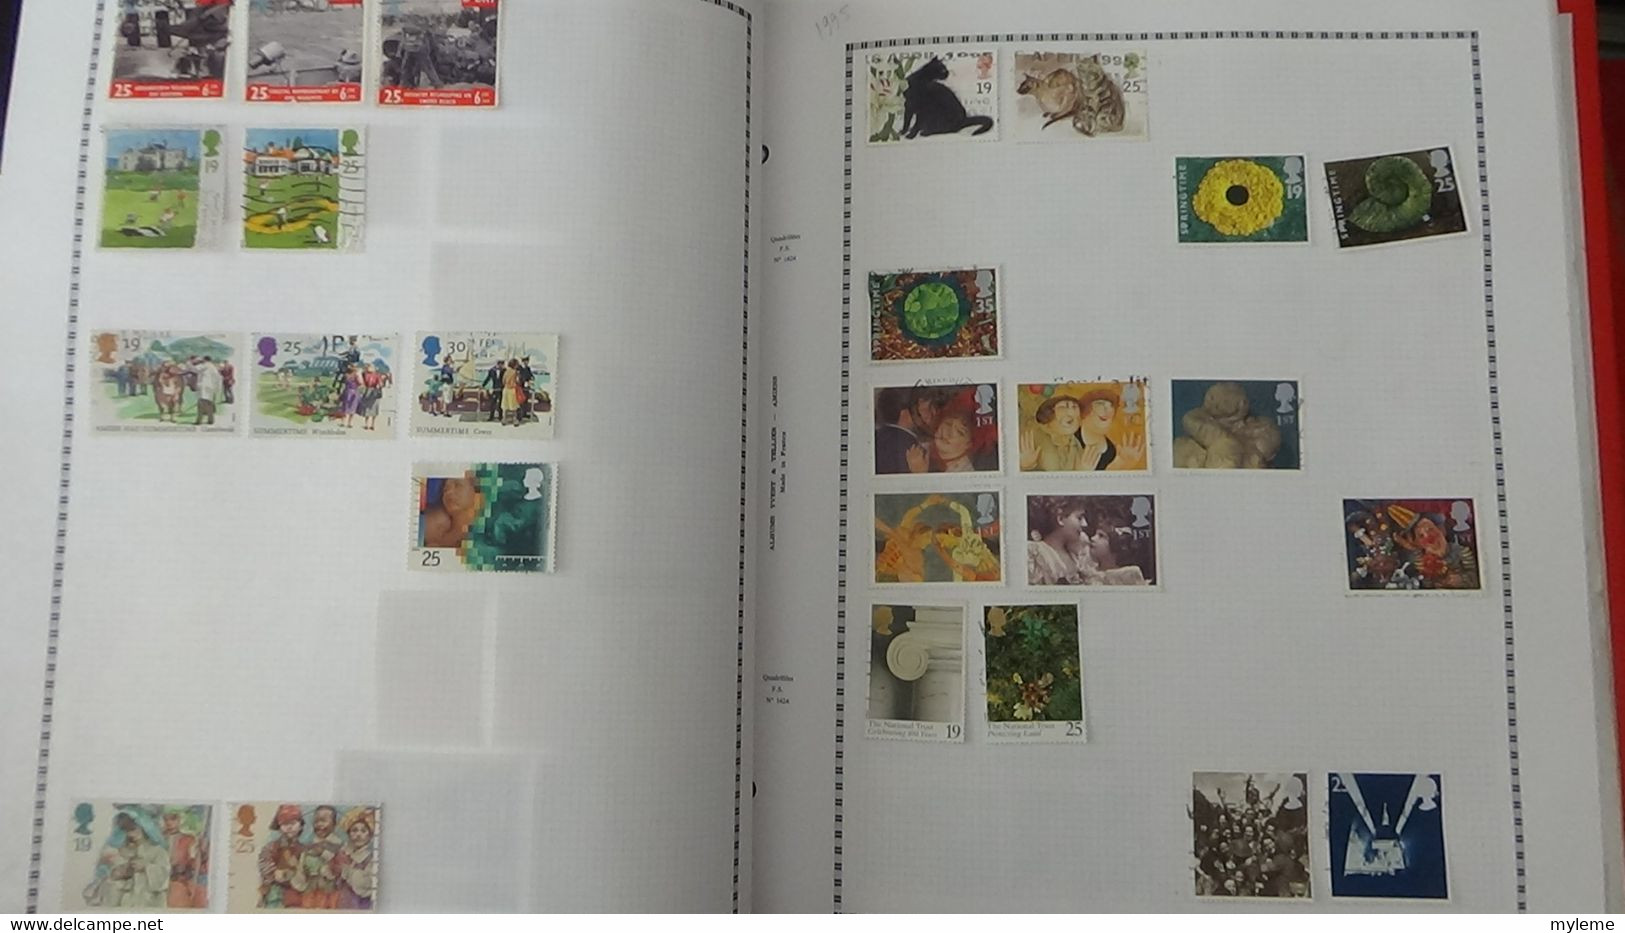 Y11 Collection de timbres oblitérés  de différents pays d'Europe Voir commentaires ...  A saisir !!!